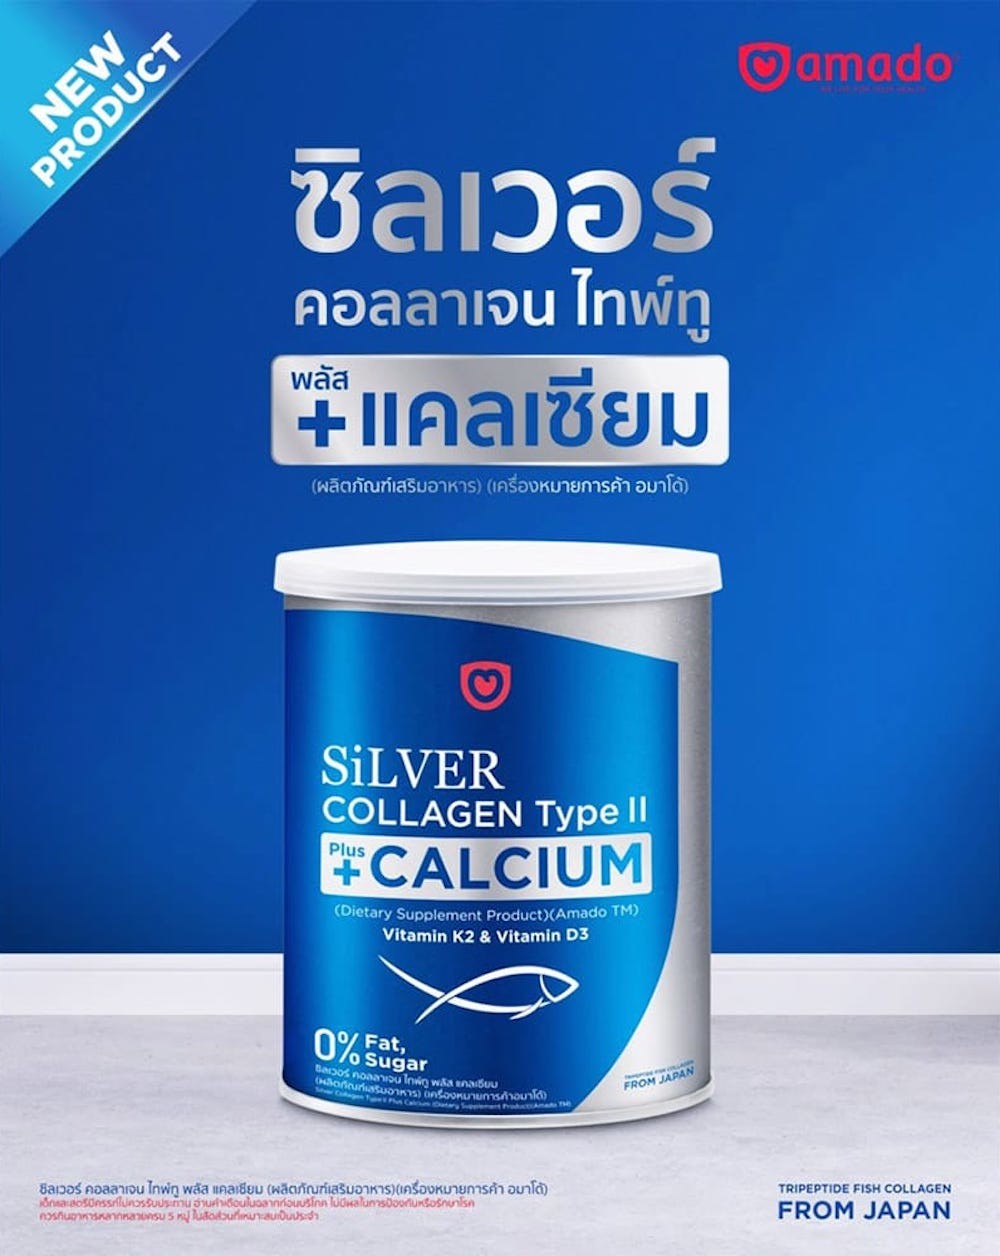 02-02-amado-silver-collagen-type-ii-2.jp